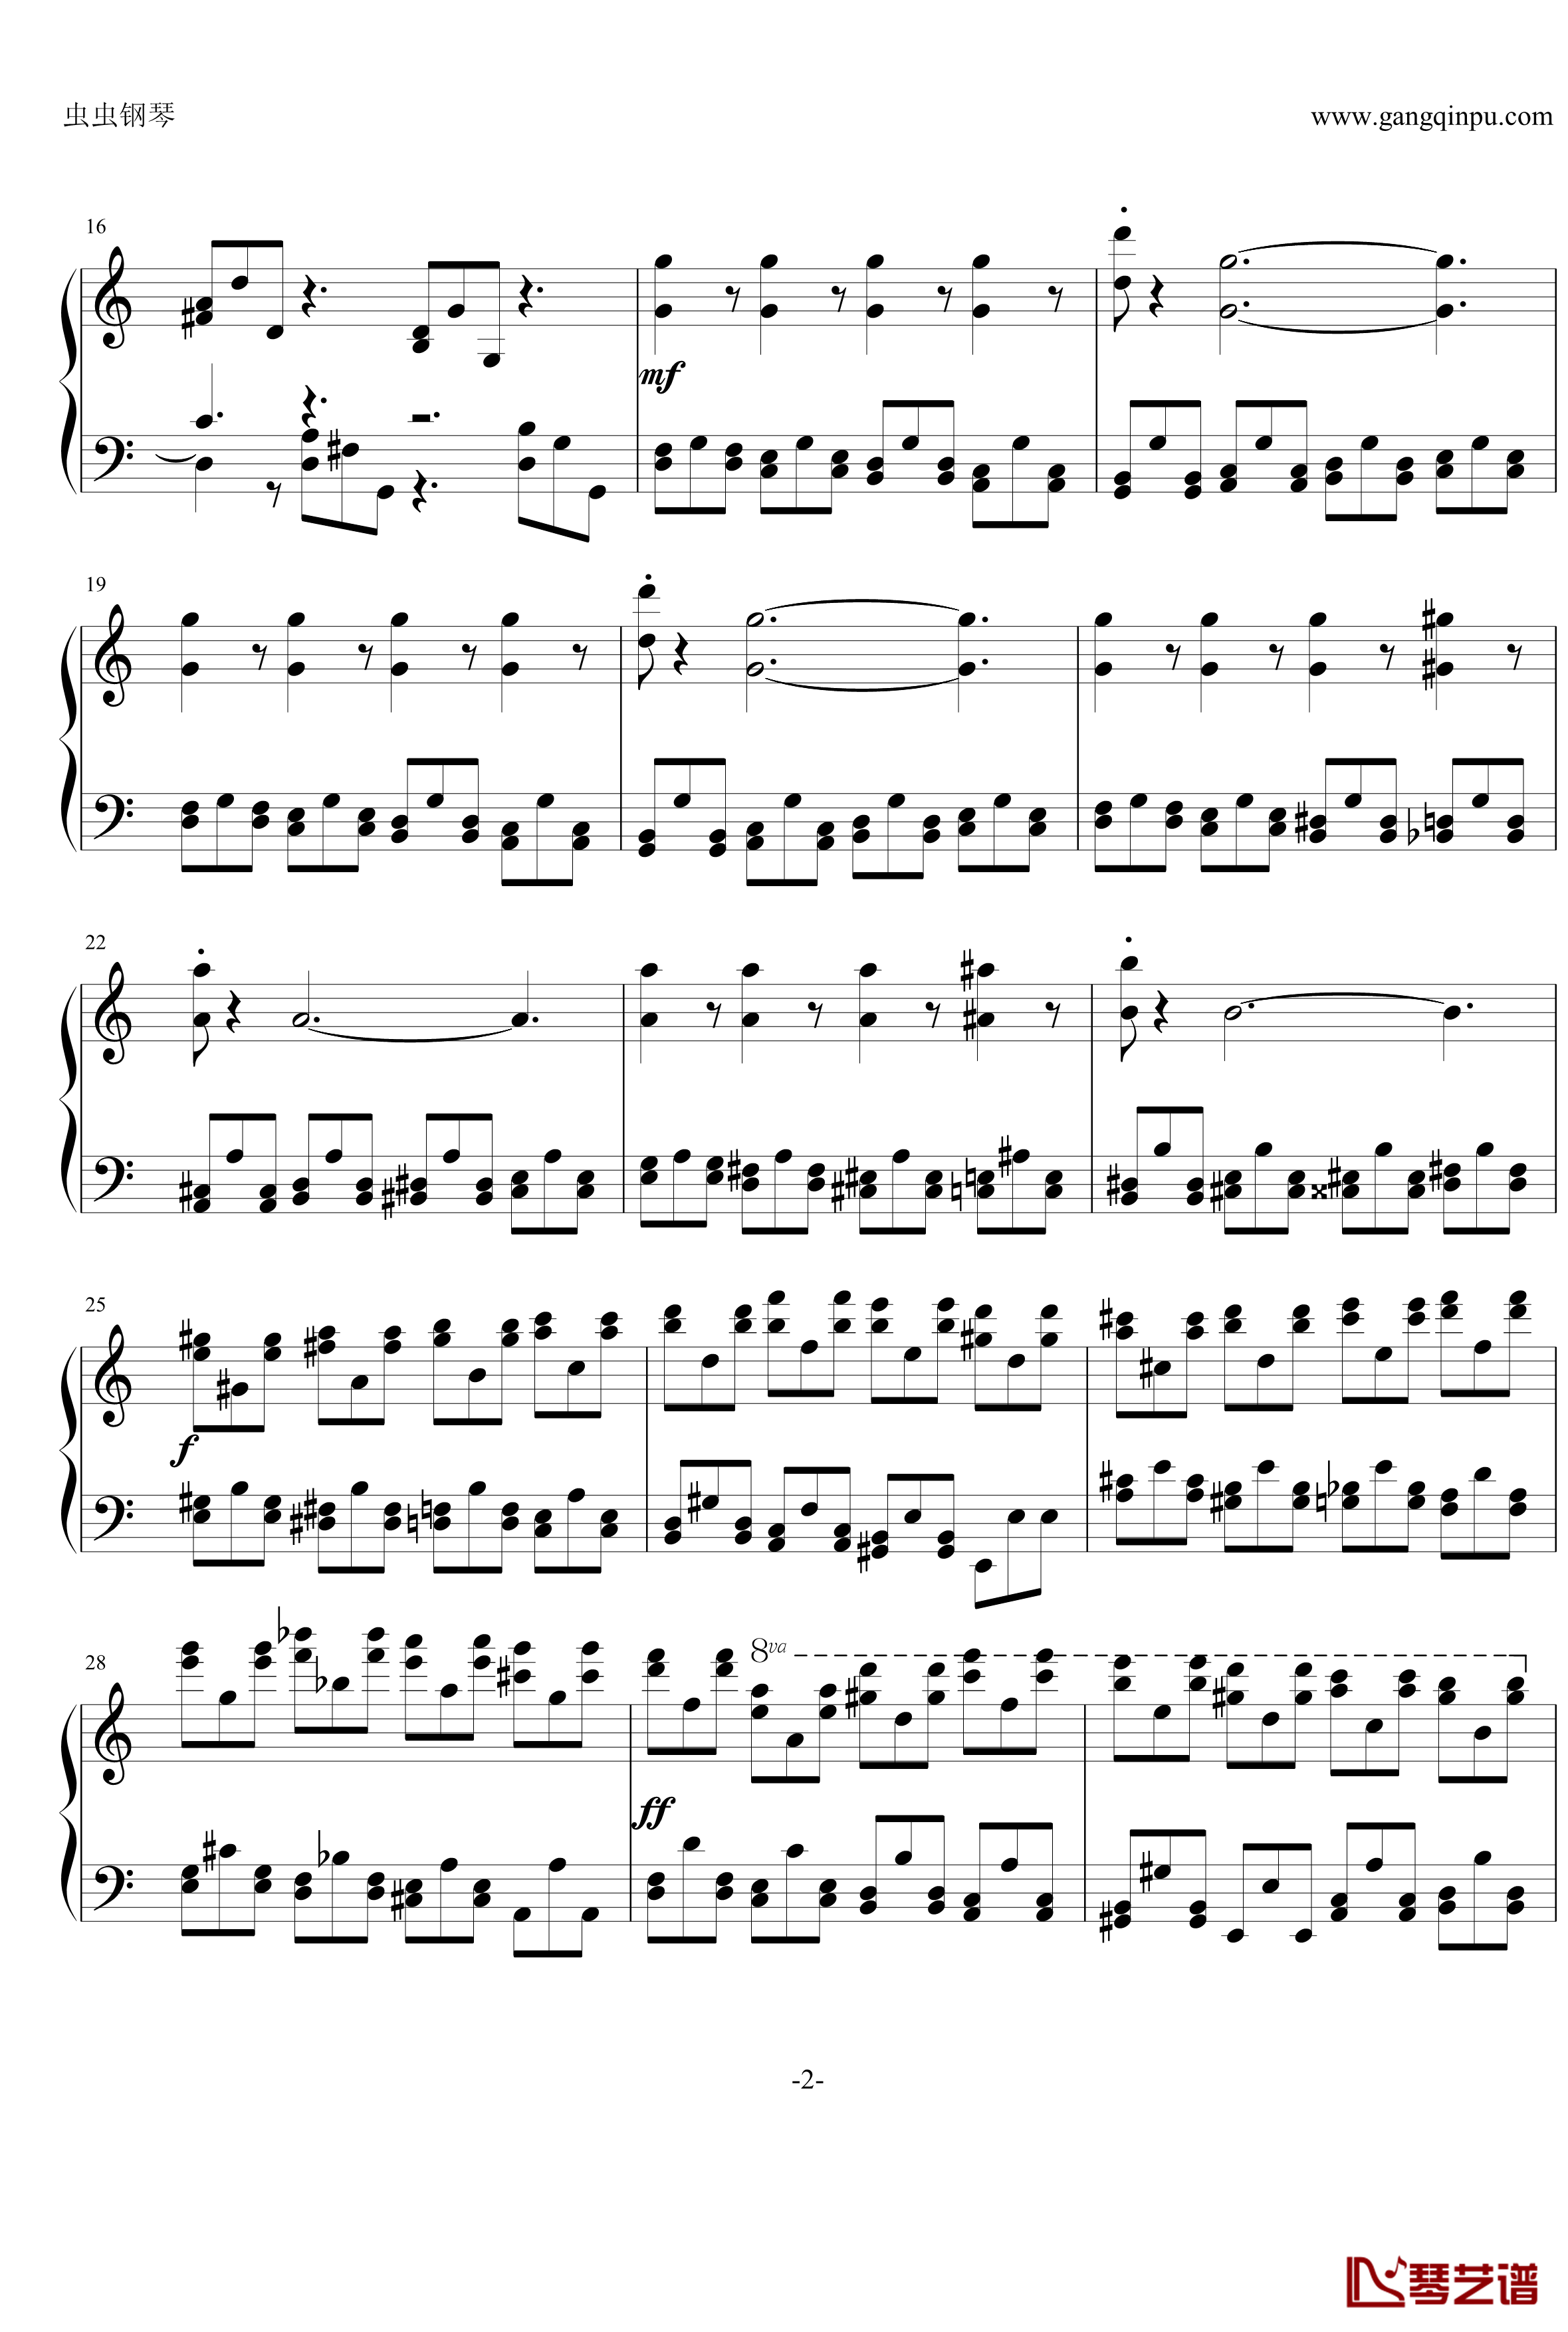 巧技练习曲钢琴谱-莫什科夫斯基-Moszkowski2